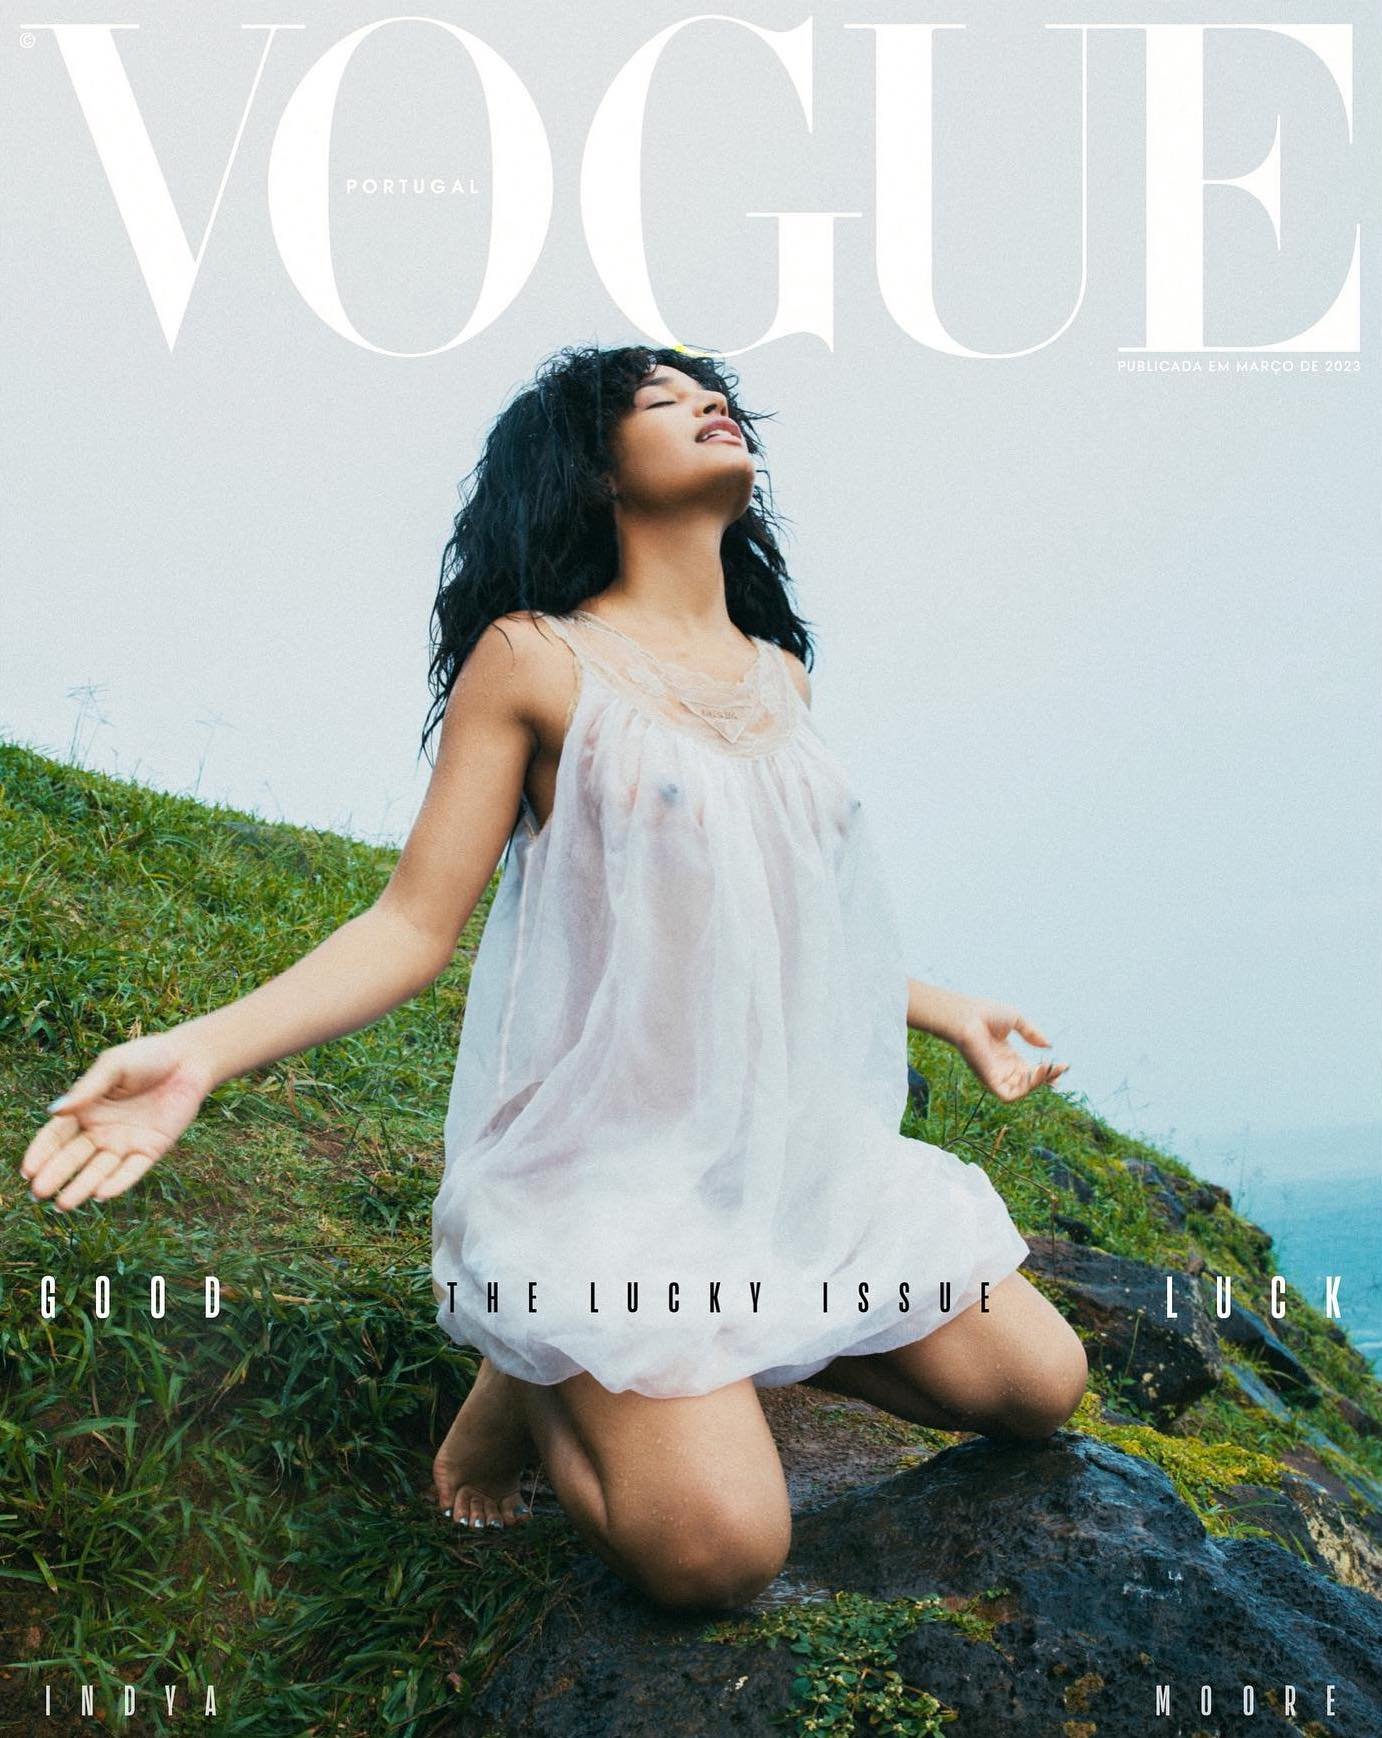 IM-Indya-Moore-Ode-a-Lemanja-Vogue-Portugal-00015.jpg